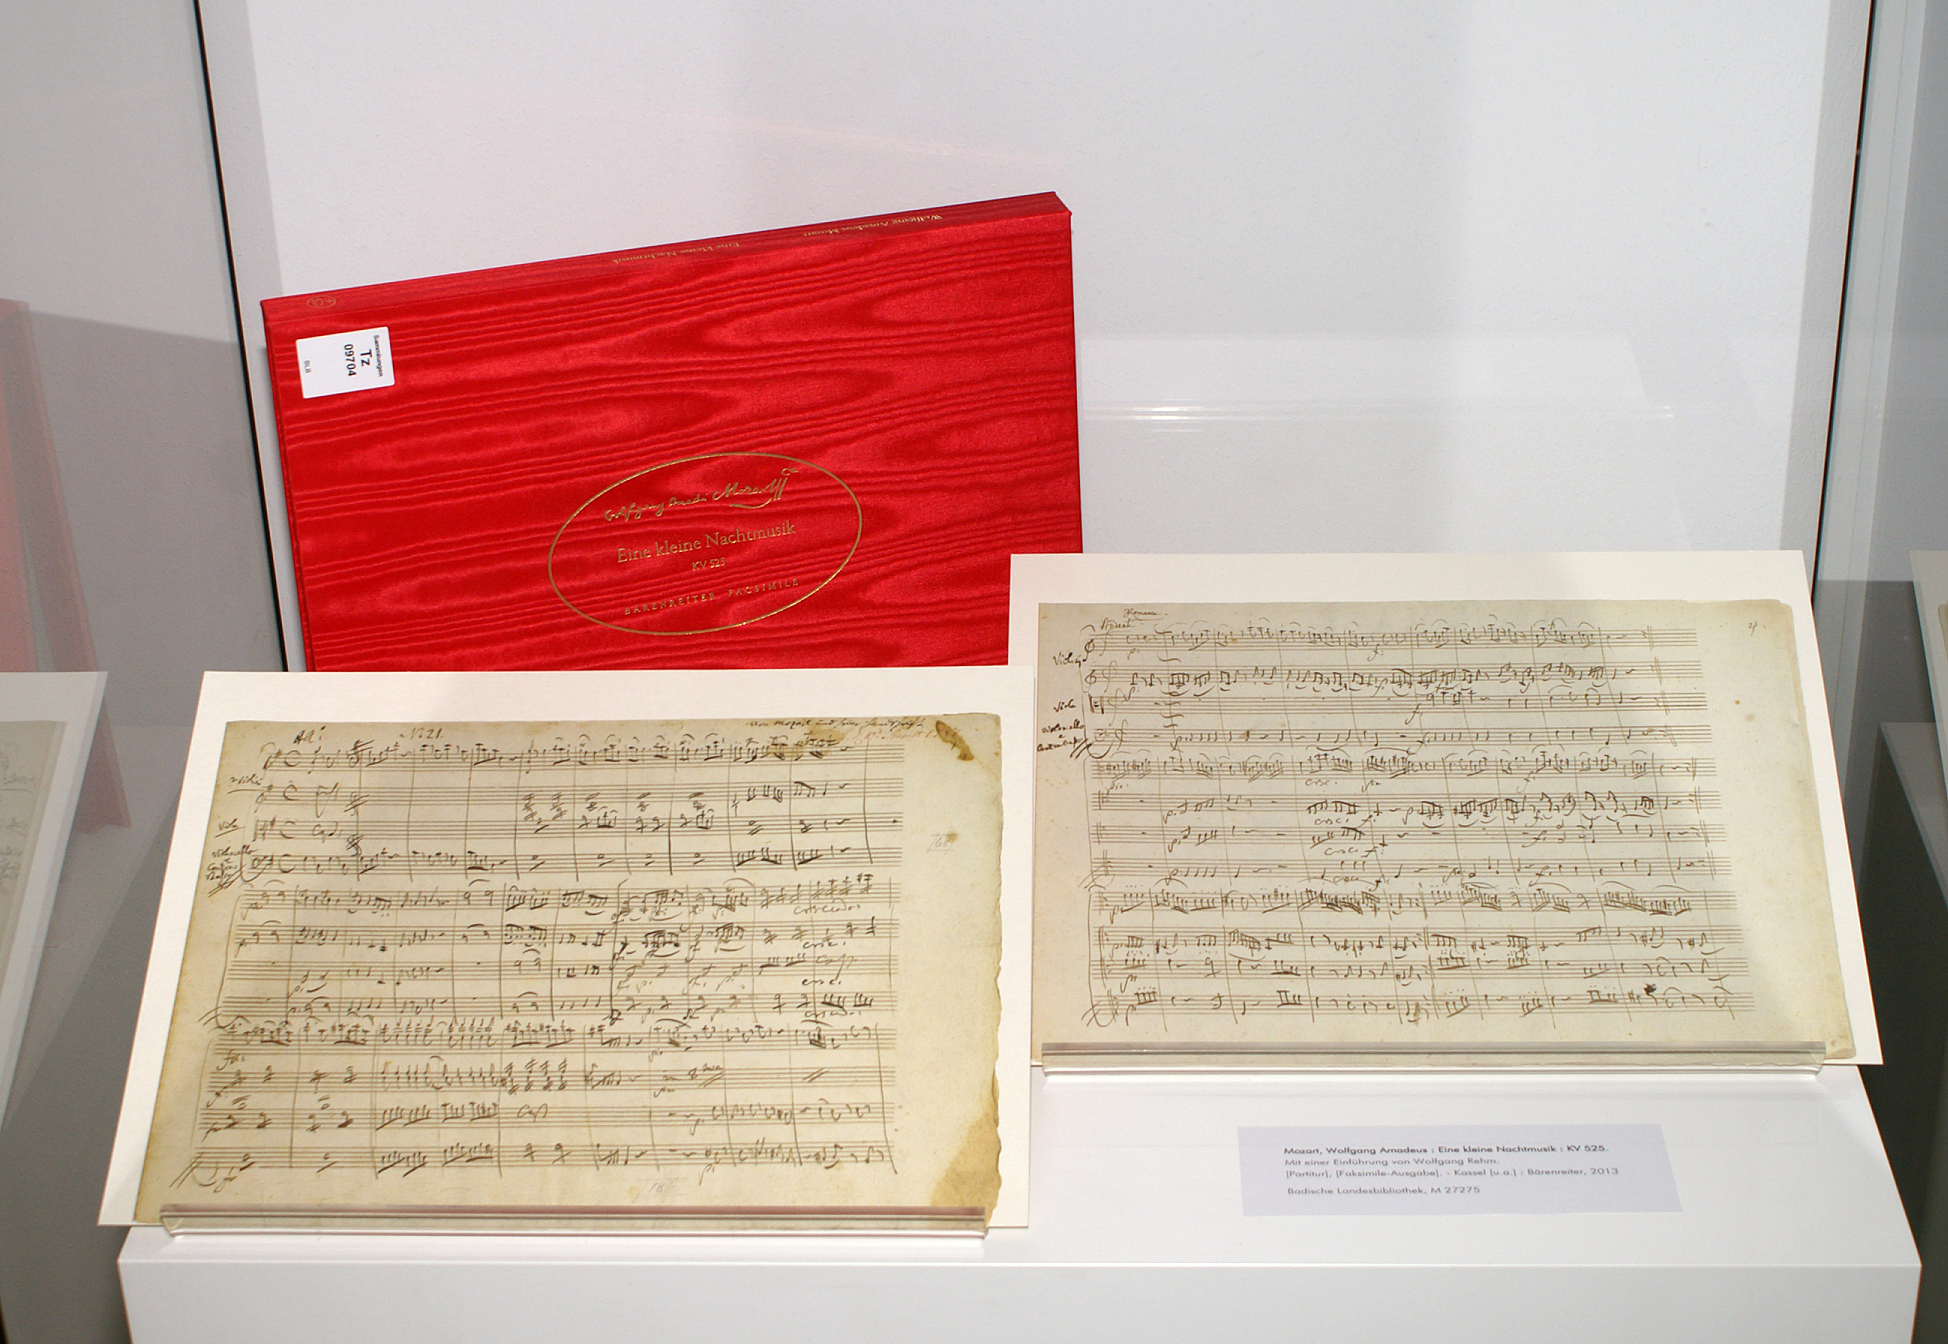 Ausstellungsansicht von Mozart's "Eine kleine Nachtmusik", der Einband ist rot mit goldenem Titel.